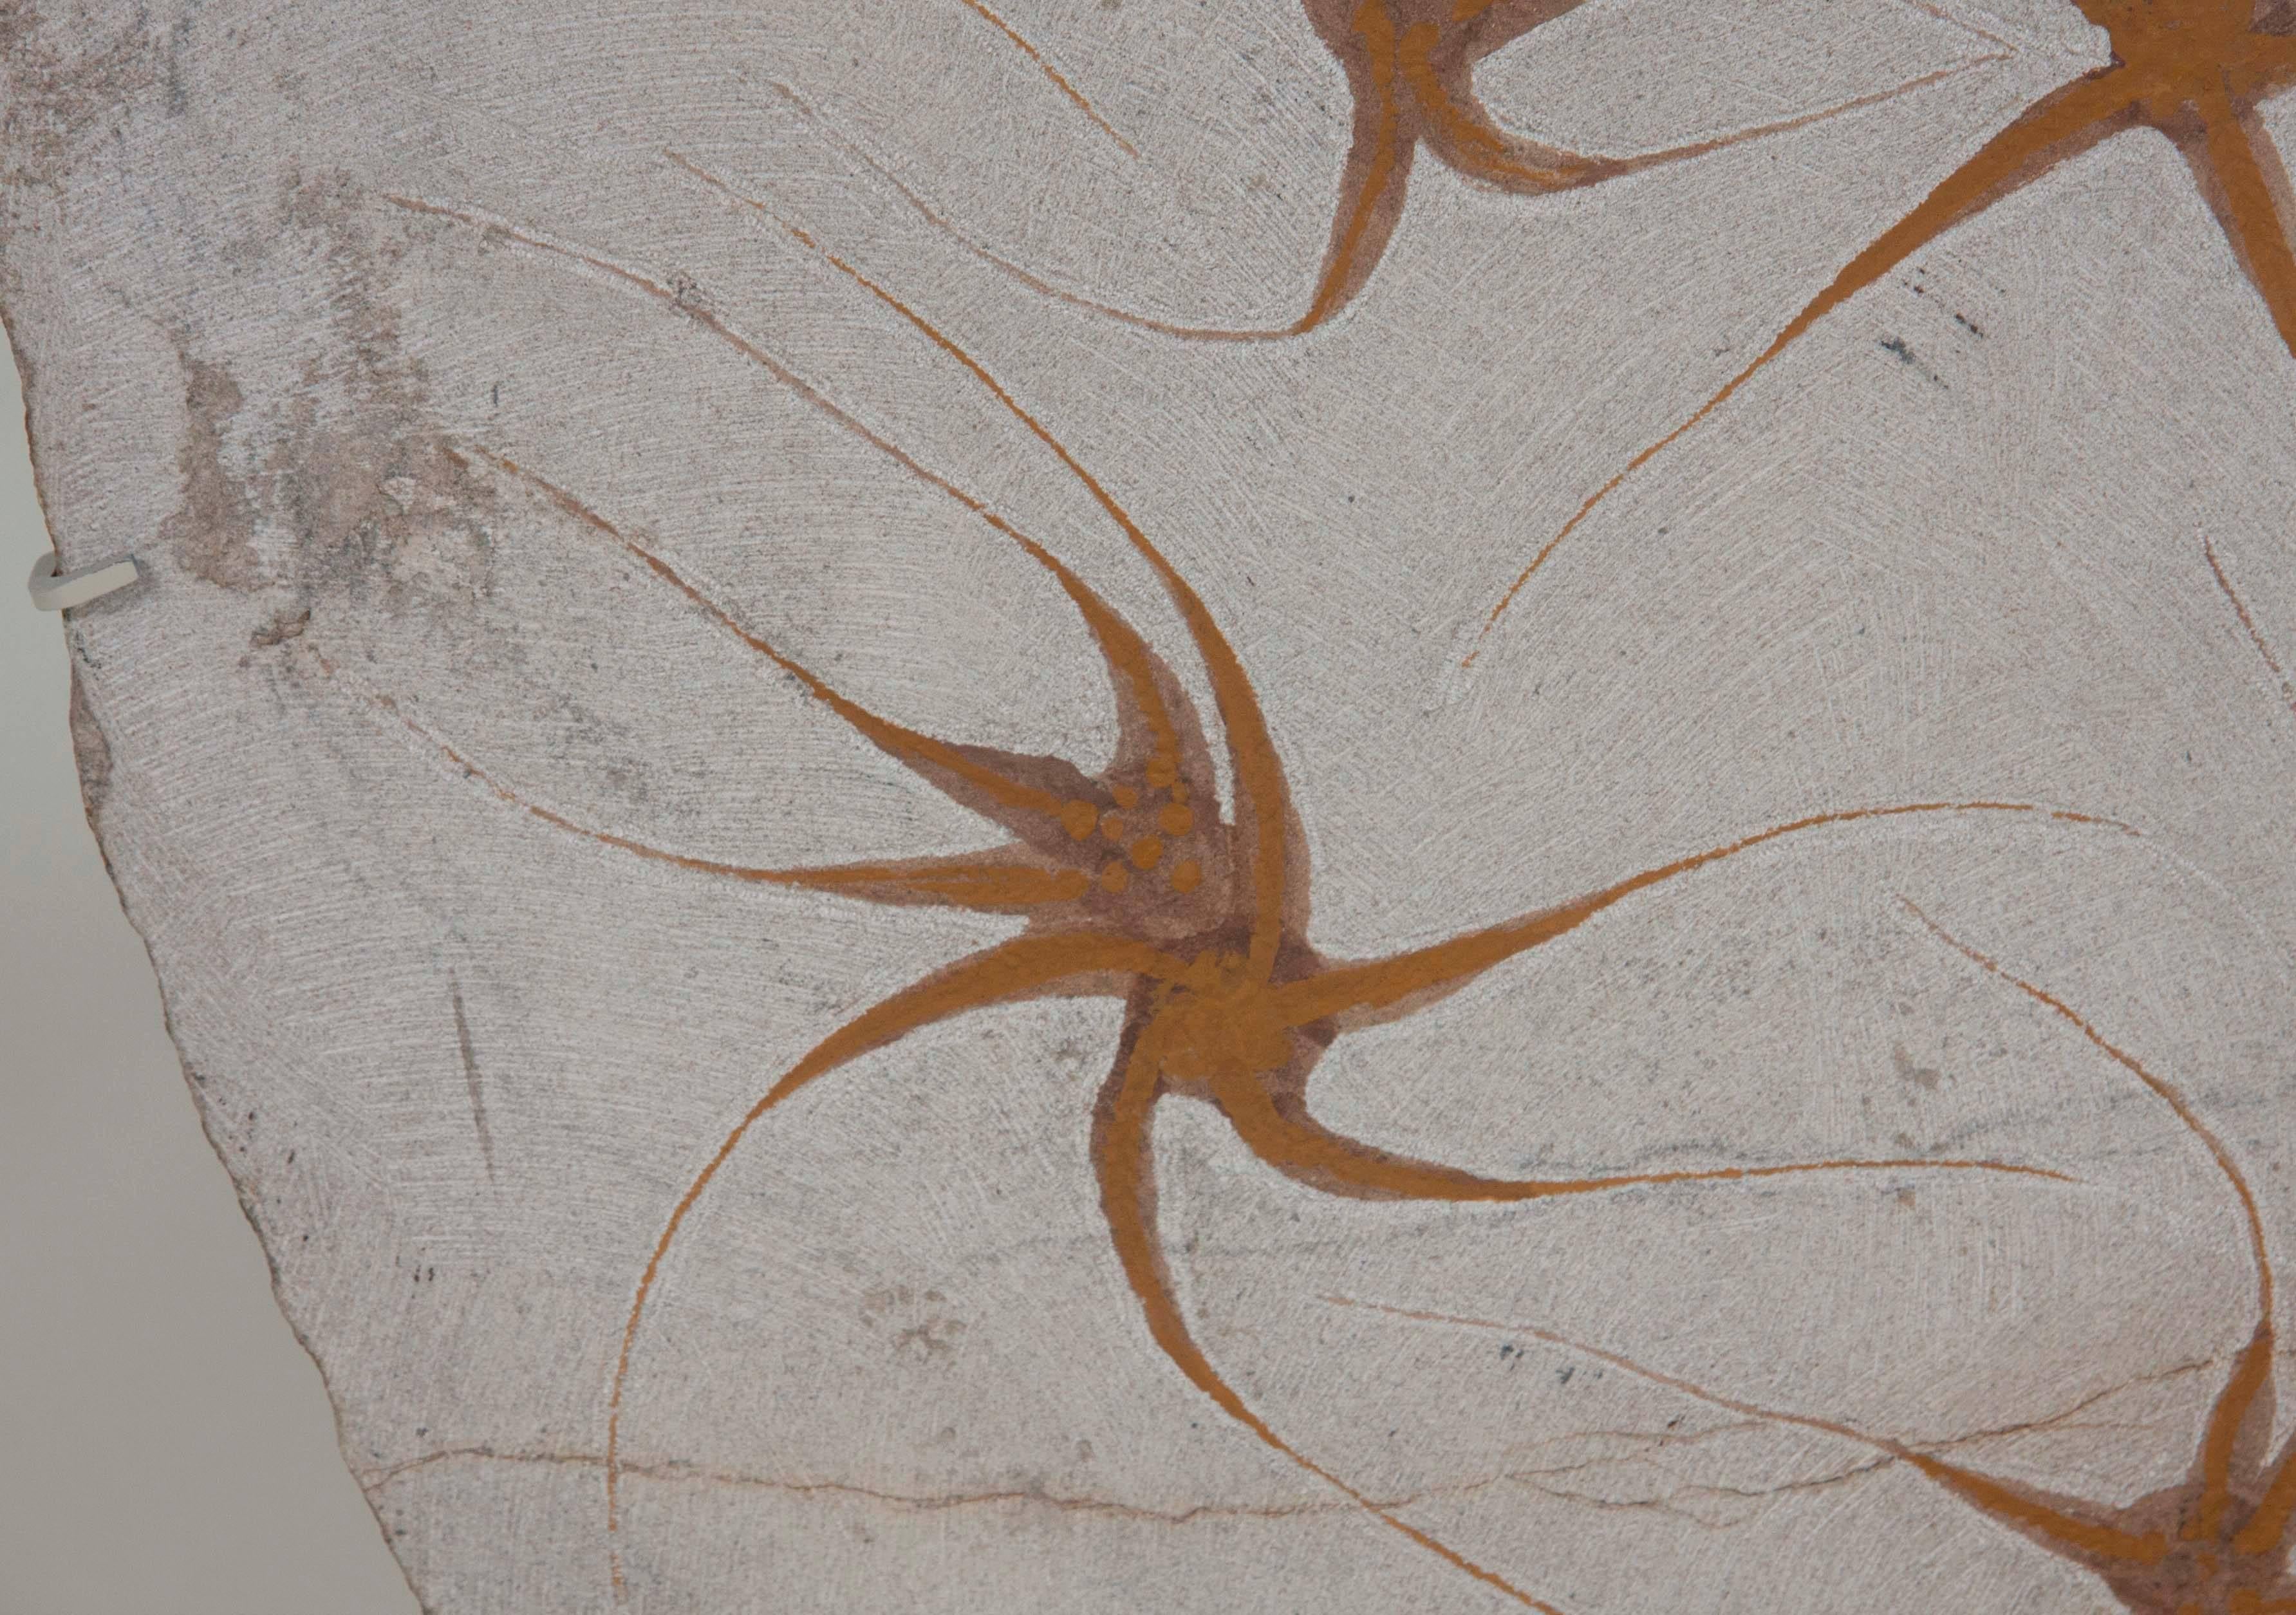 Nine Brittle Starfish Fossils 